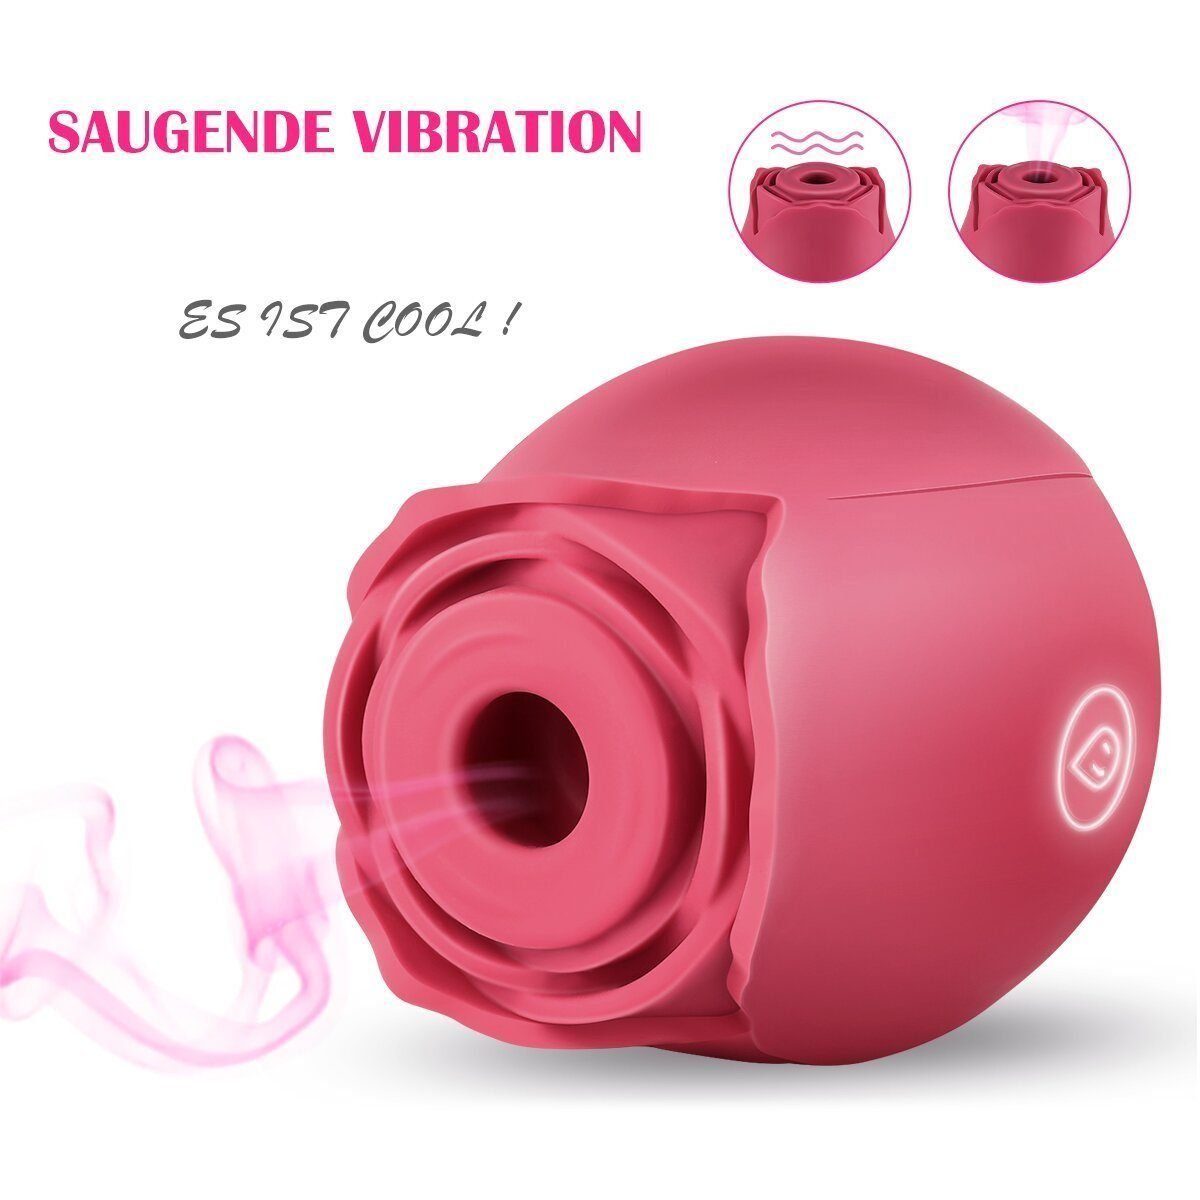 Frauen Intensiv Saugenden, Nippel Stimulator Sucking Für Clitoral Vibrator Sucker Rose Solo Sexspielzeug Mit Für Vibrator 10 Sex LOVONLIVE Vibrator